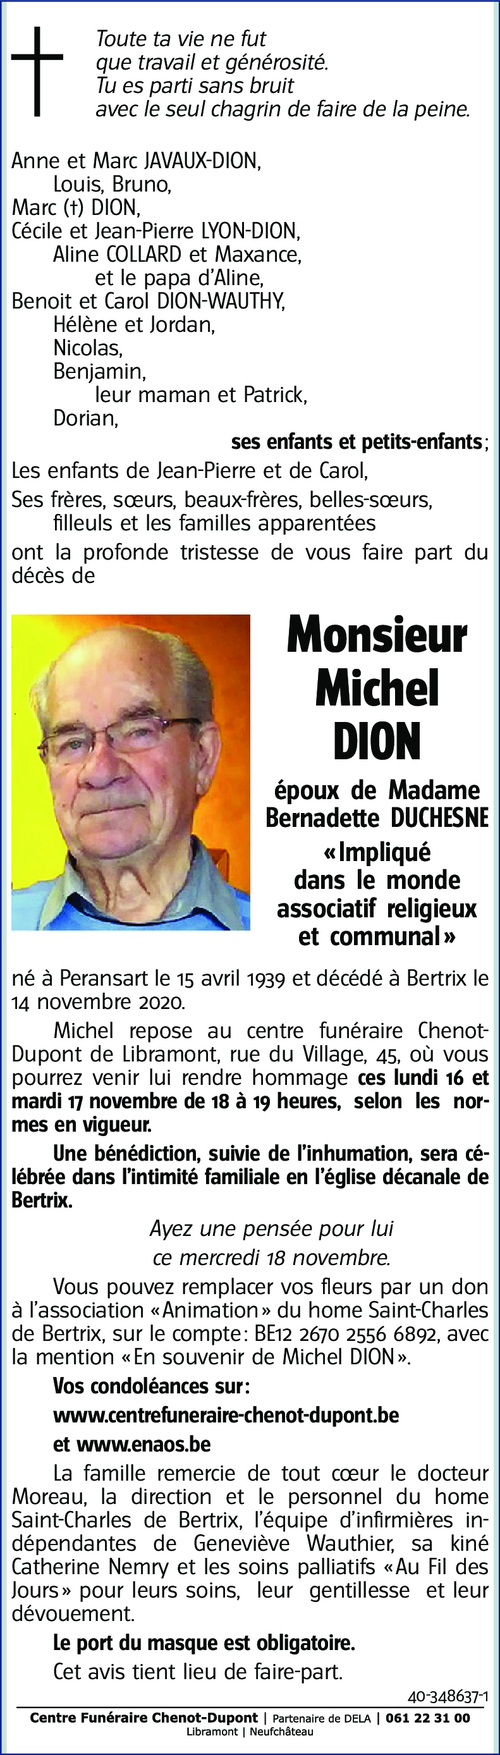 Michel DION